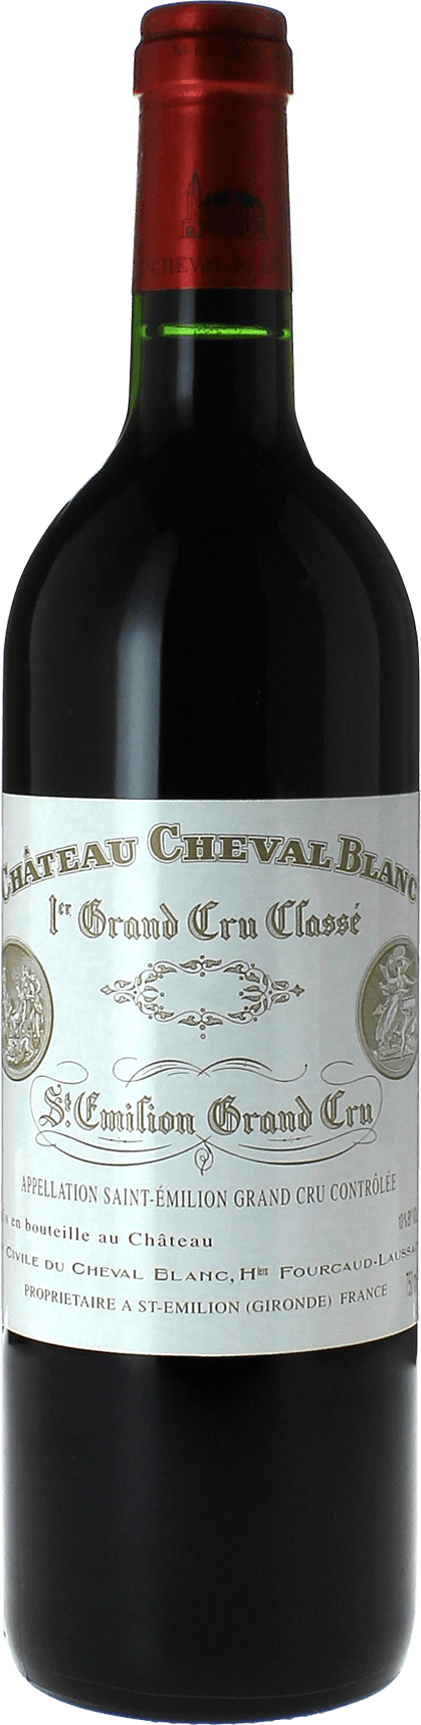 Cheval blanc 2005 (1er Grand cru classé A Saint-Emilion, vin rouge